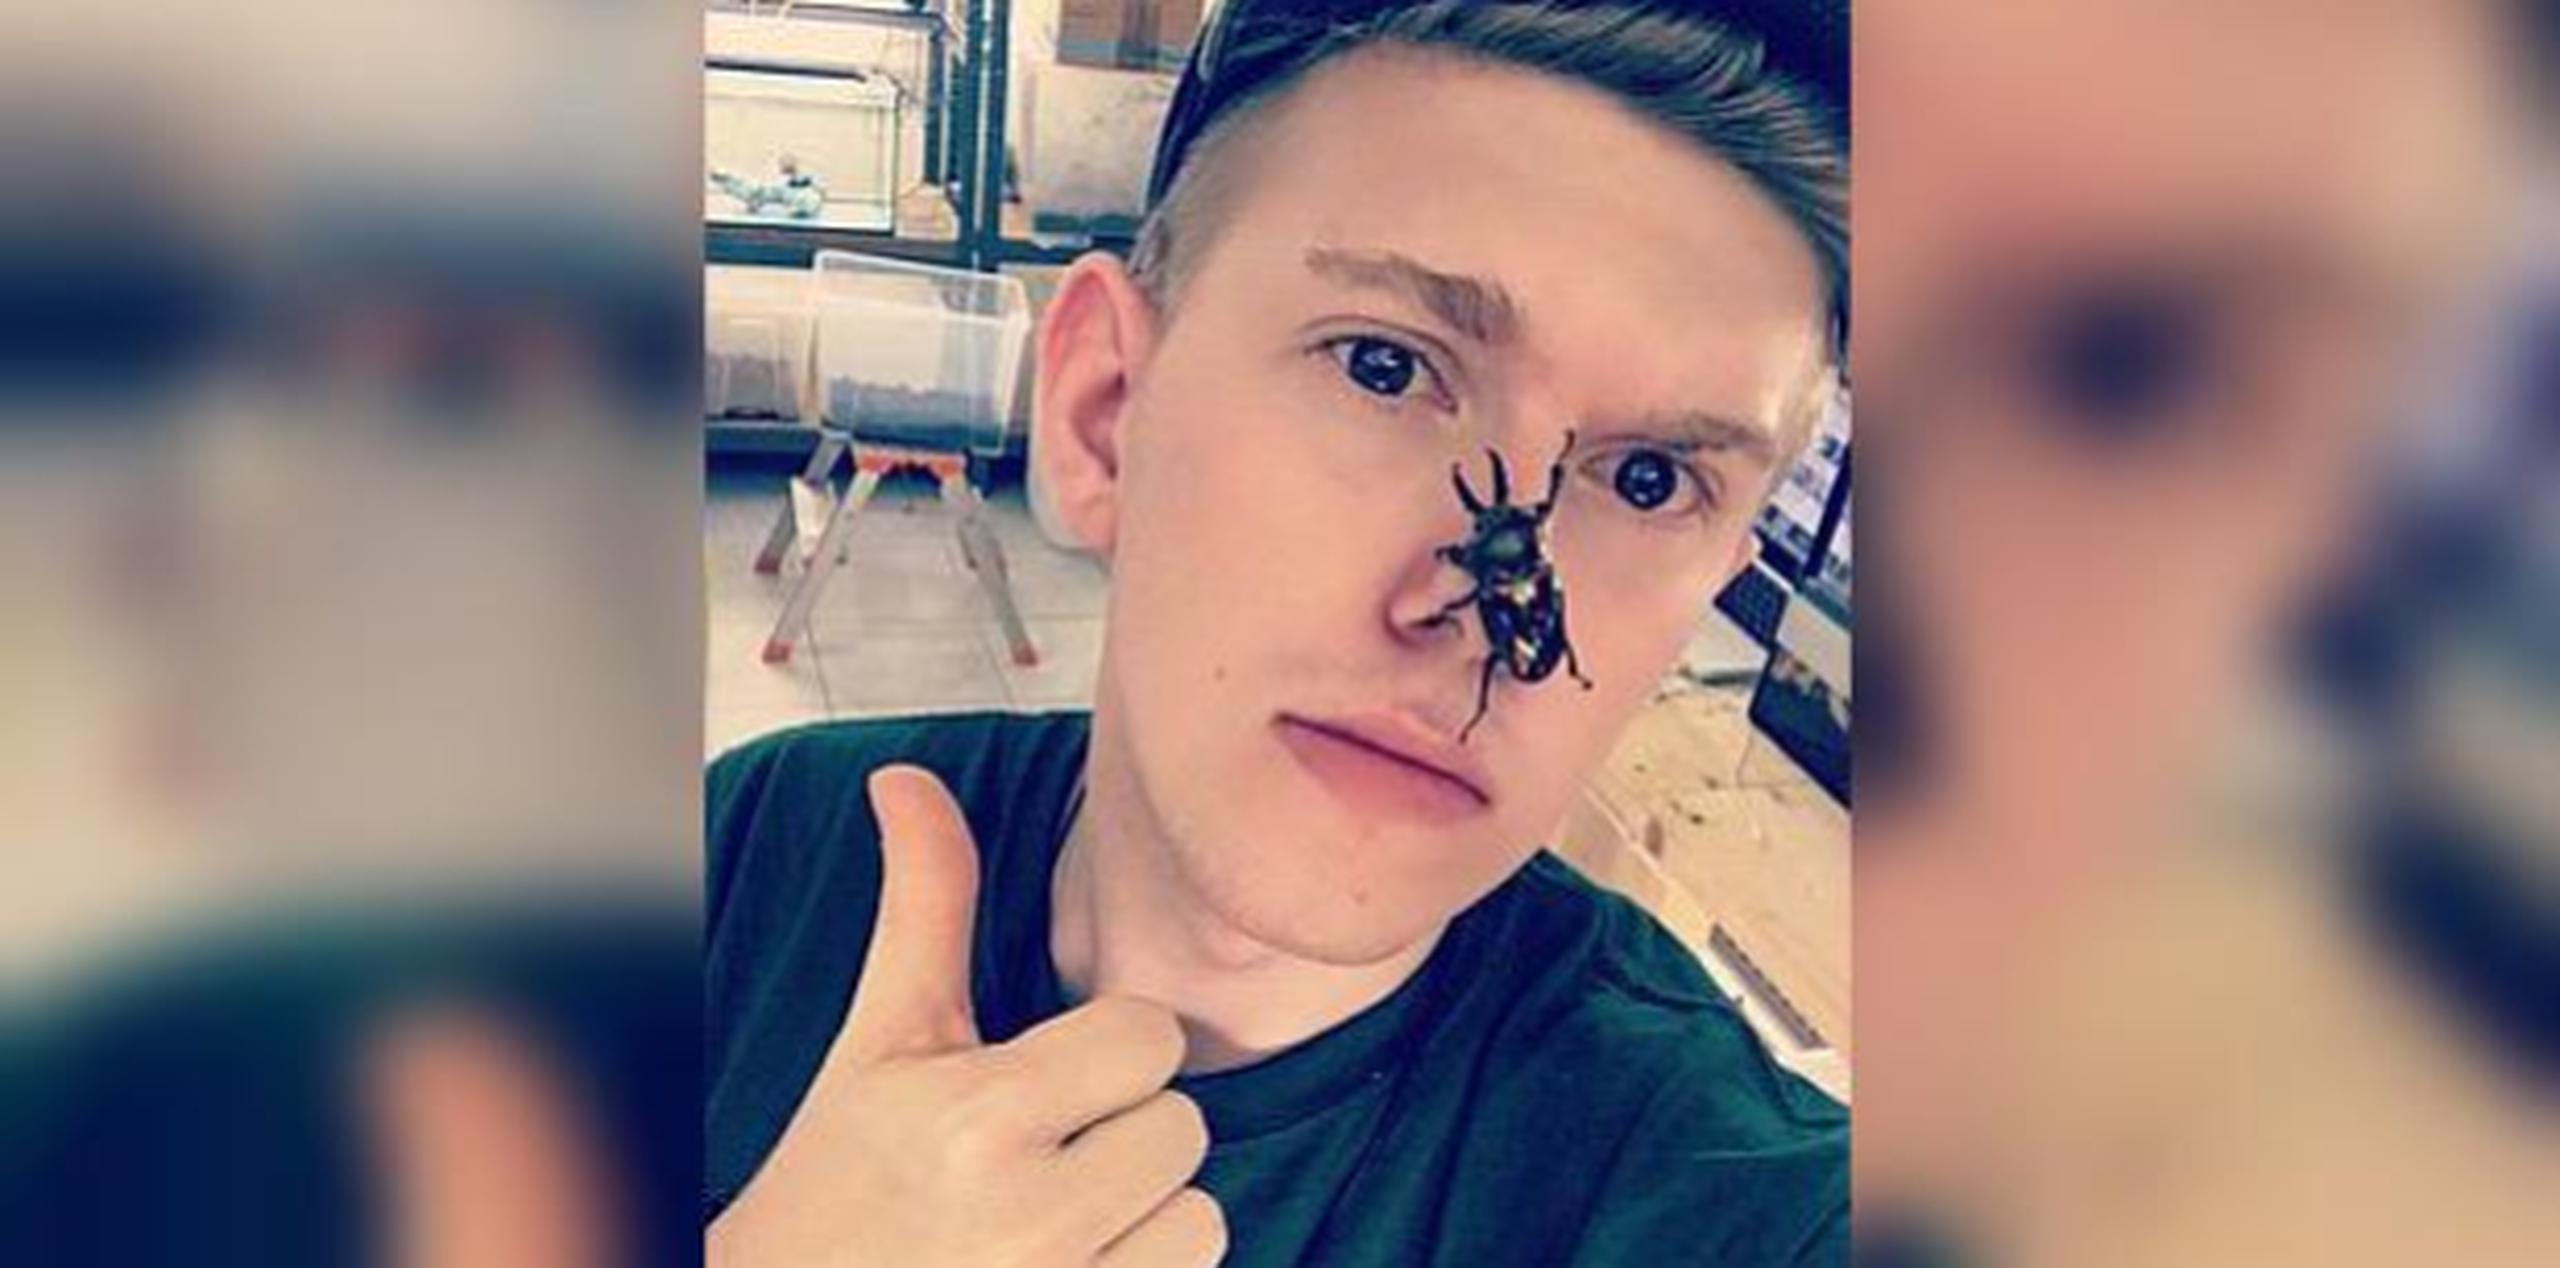 Adrian Kozakiewicz es famoso por publicar en Facebook e Instagram fotografías de insectos raros. (Foto: Facebook - Instagram)